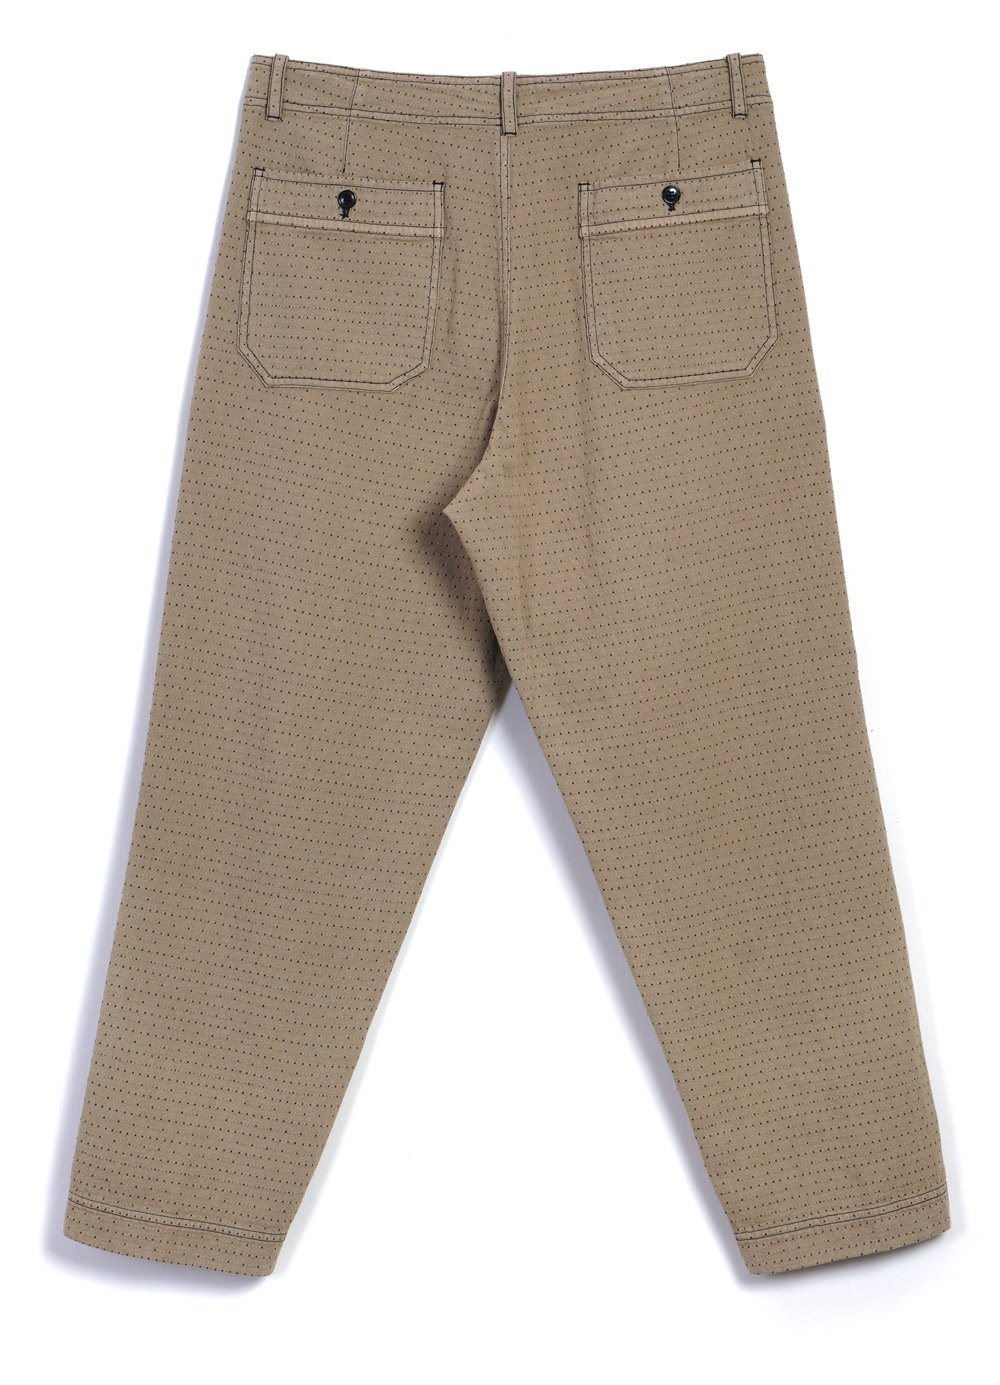 HANSEN GARMENTS - TRYGVE | Wide Cut Cropped Trousers | Beige - HANSEN Garments